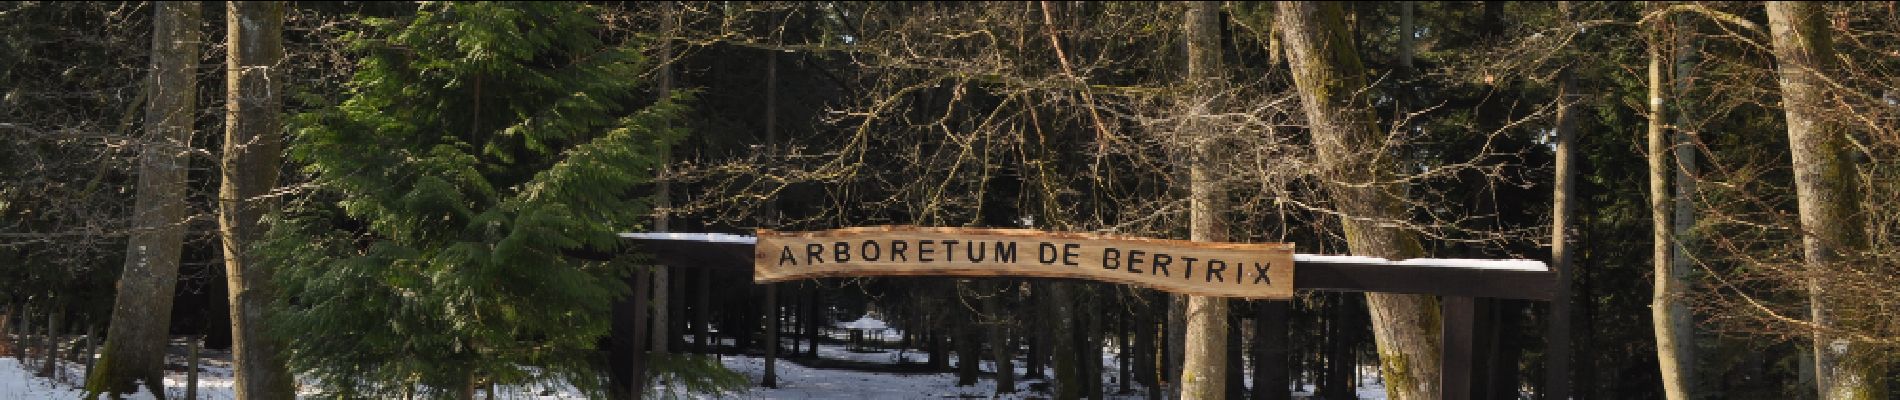 POI Bertrix - Possibilité de visiter un arboretum - Photo